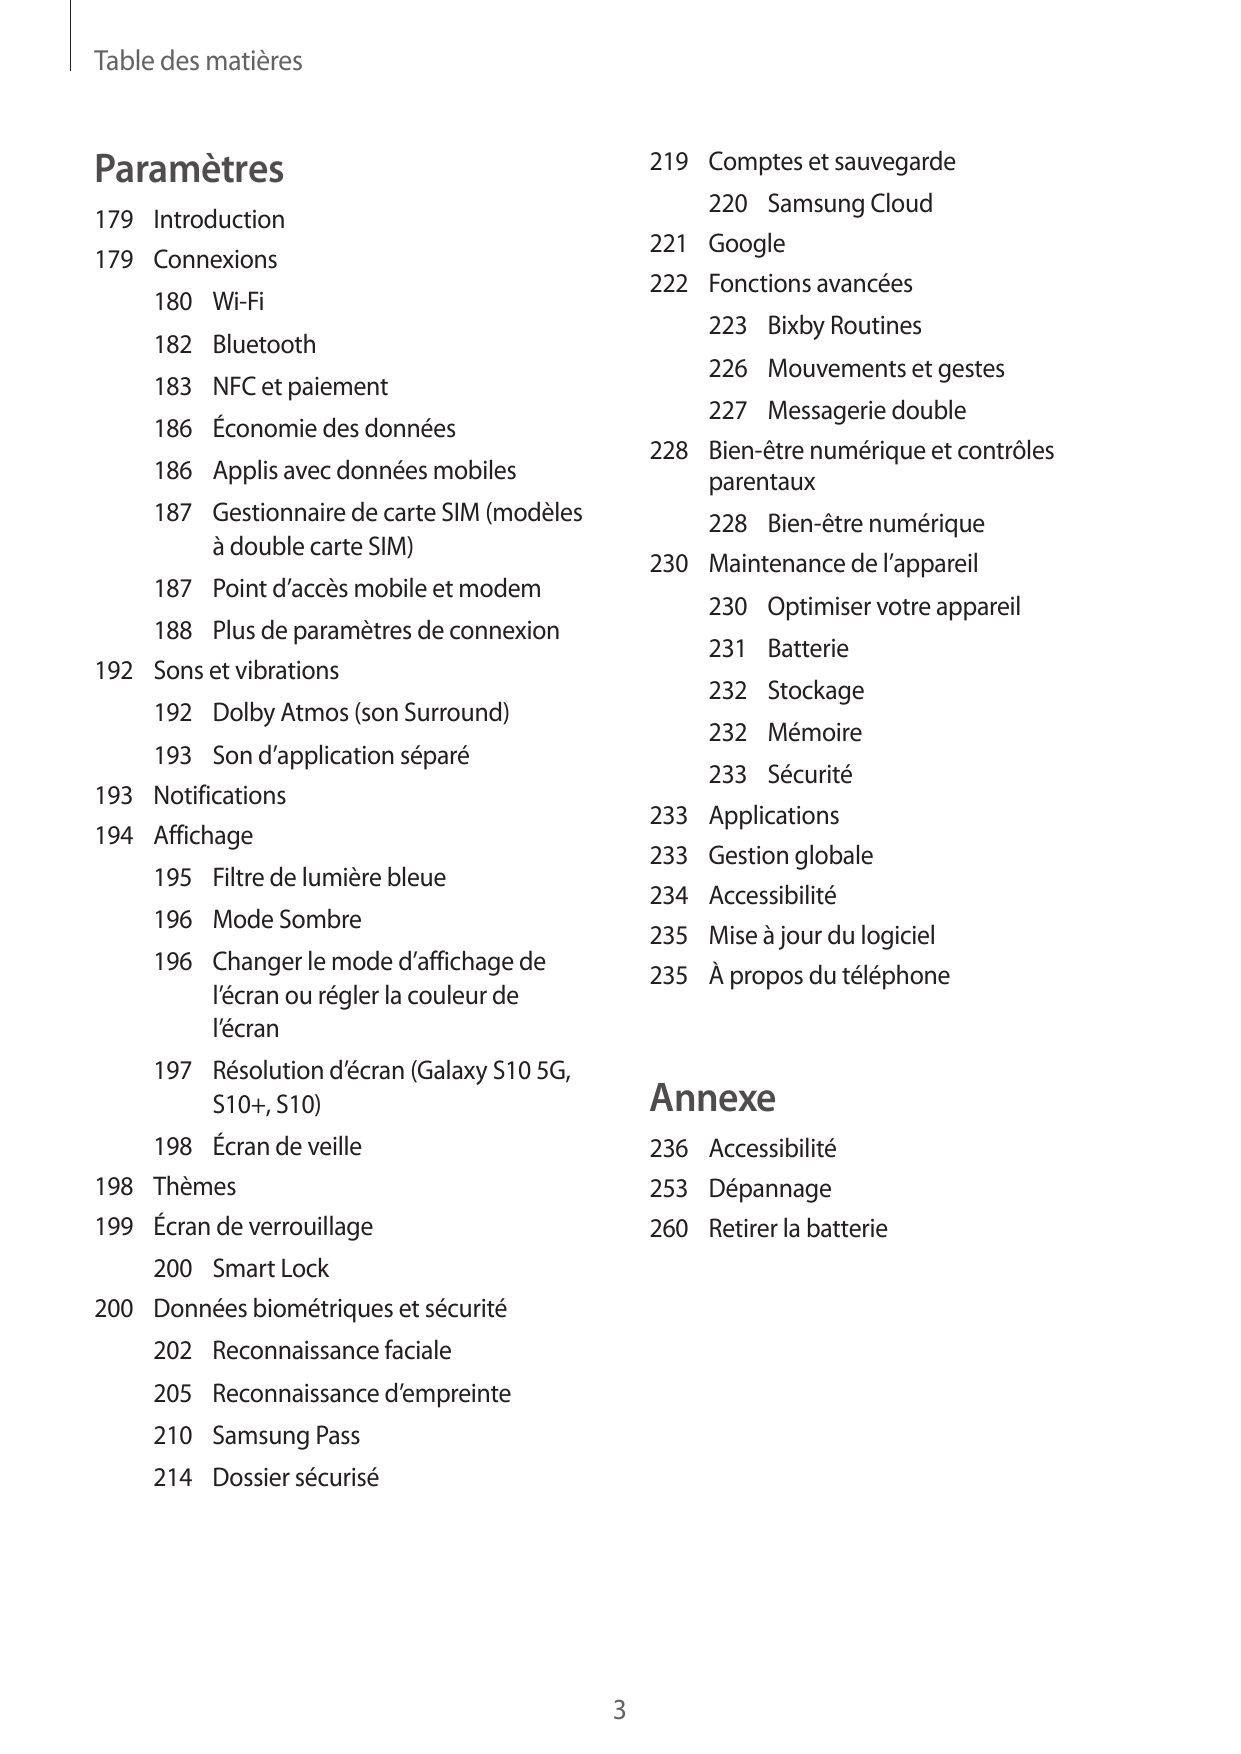 Table des matièresParamètres219 Comptes et sauvegarde220 Samsung Cloud221Google222 Fonctions avancées179Introduction179Connexion